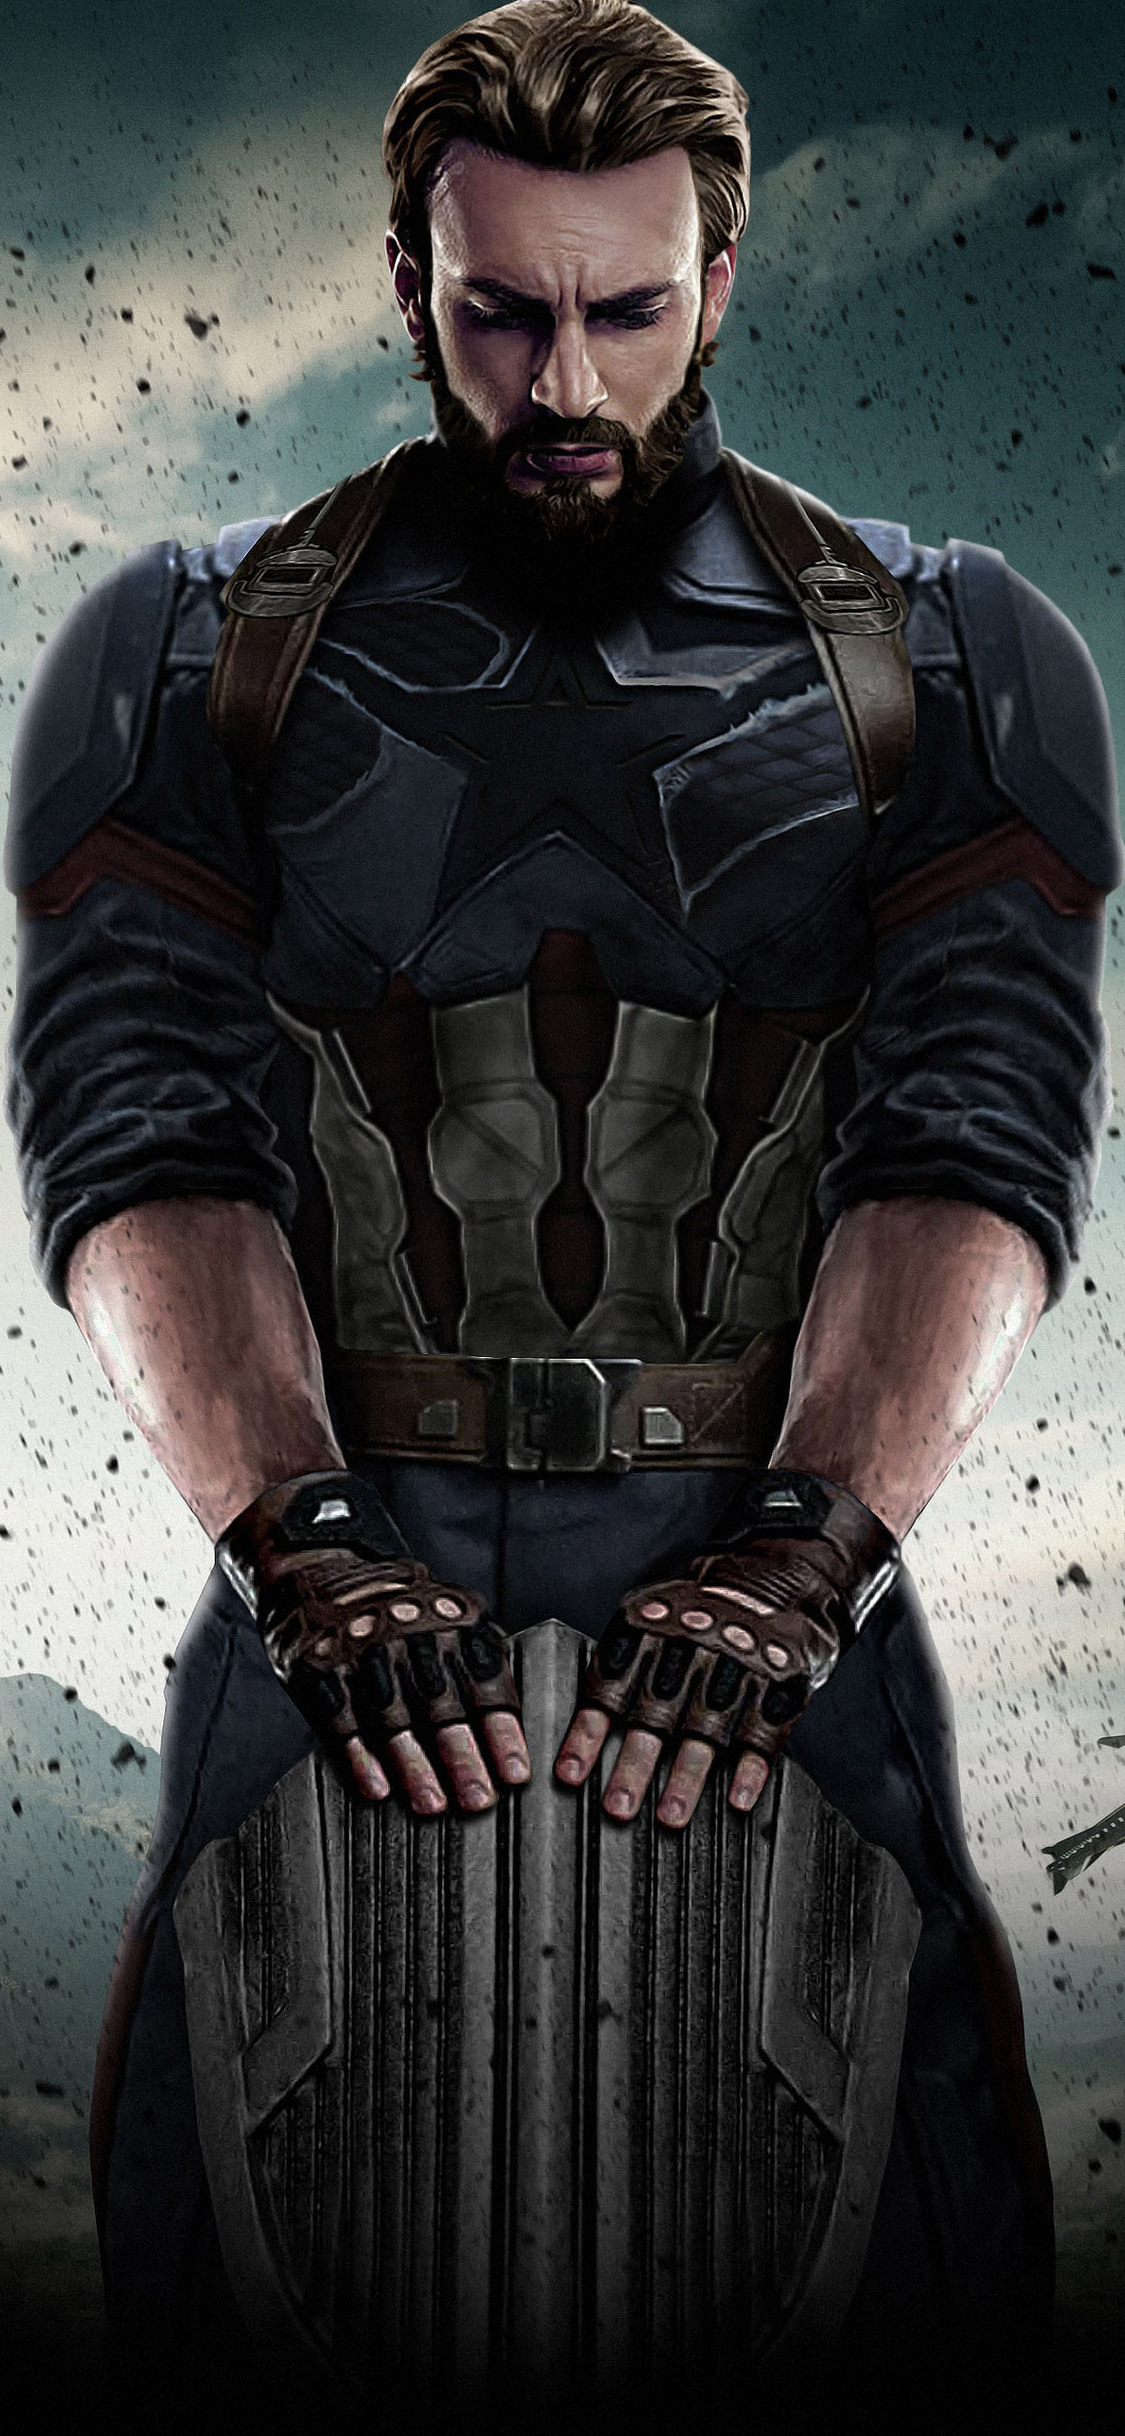 captain-america-avengers-infinity-war-2018-k6-1125x2436.jpg